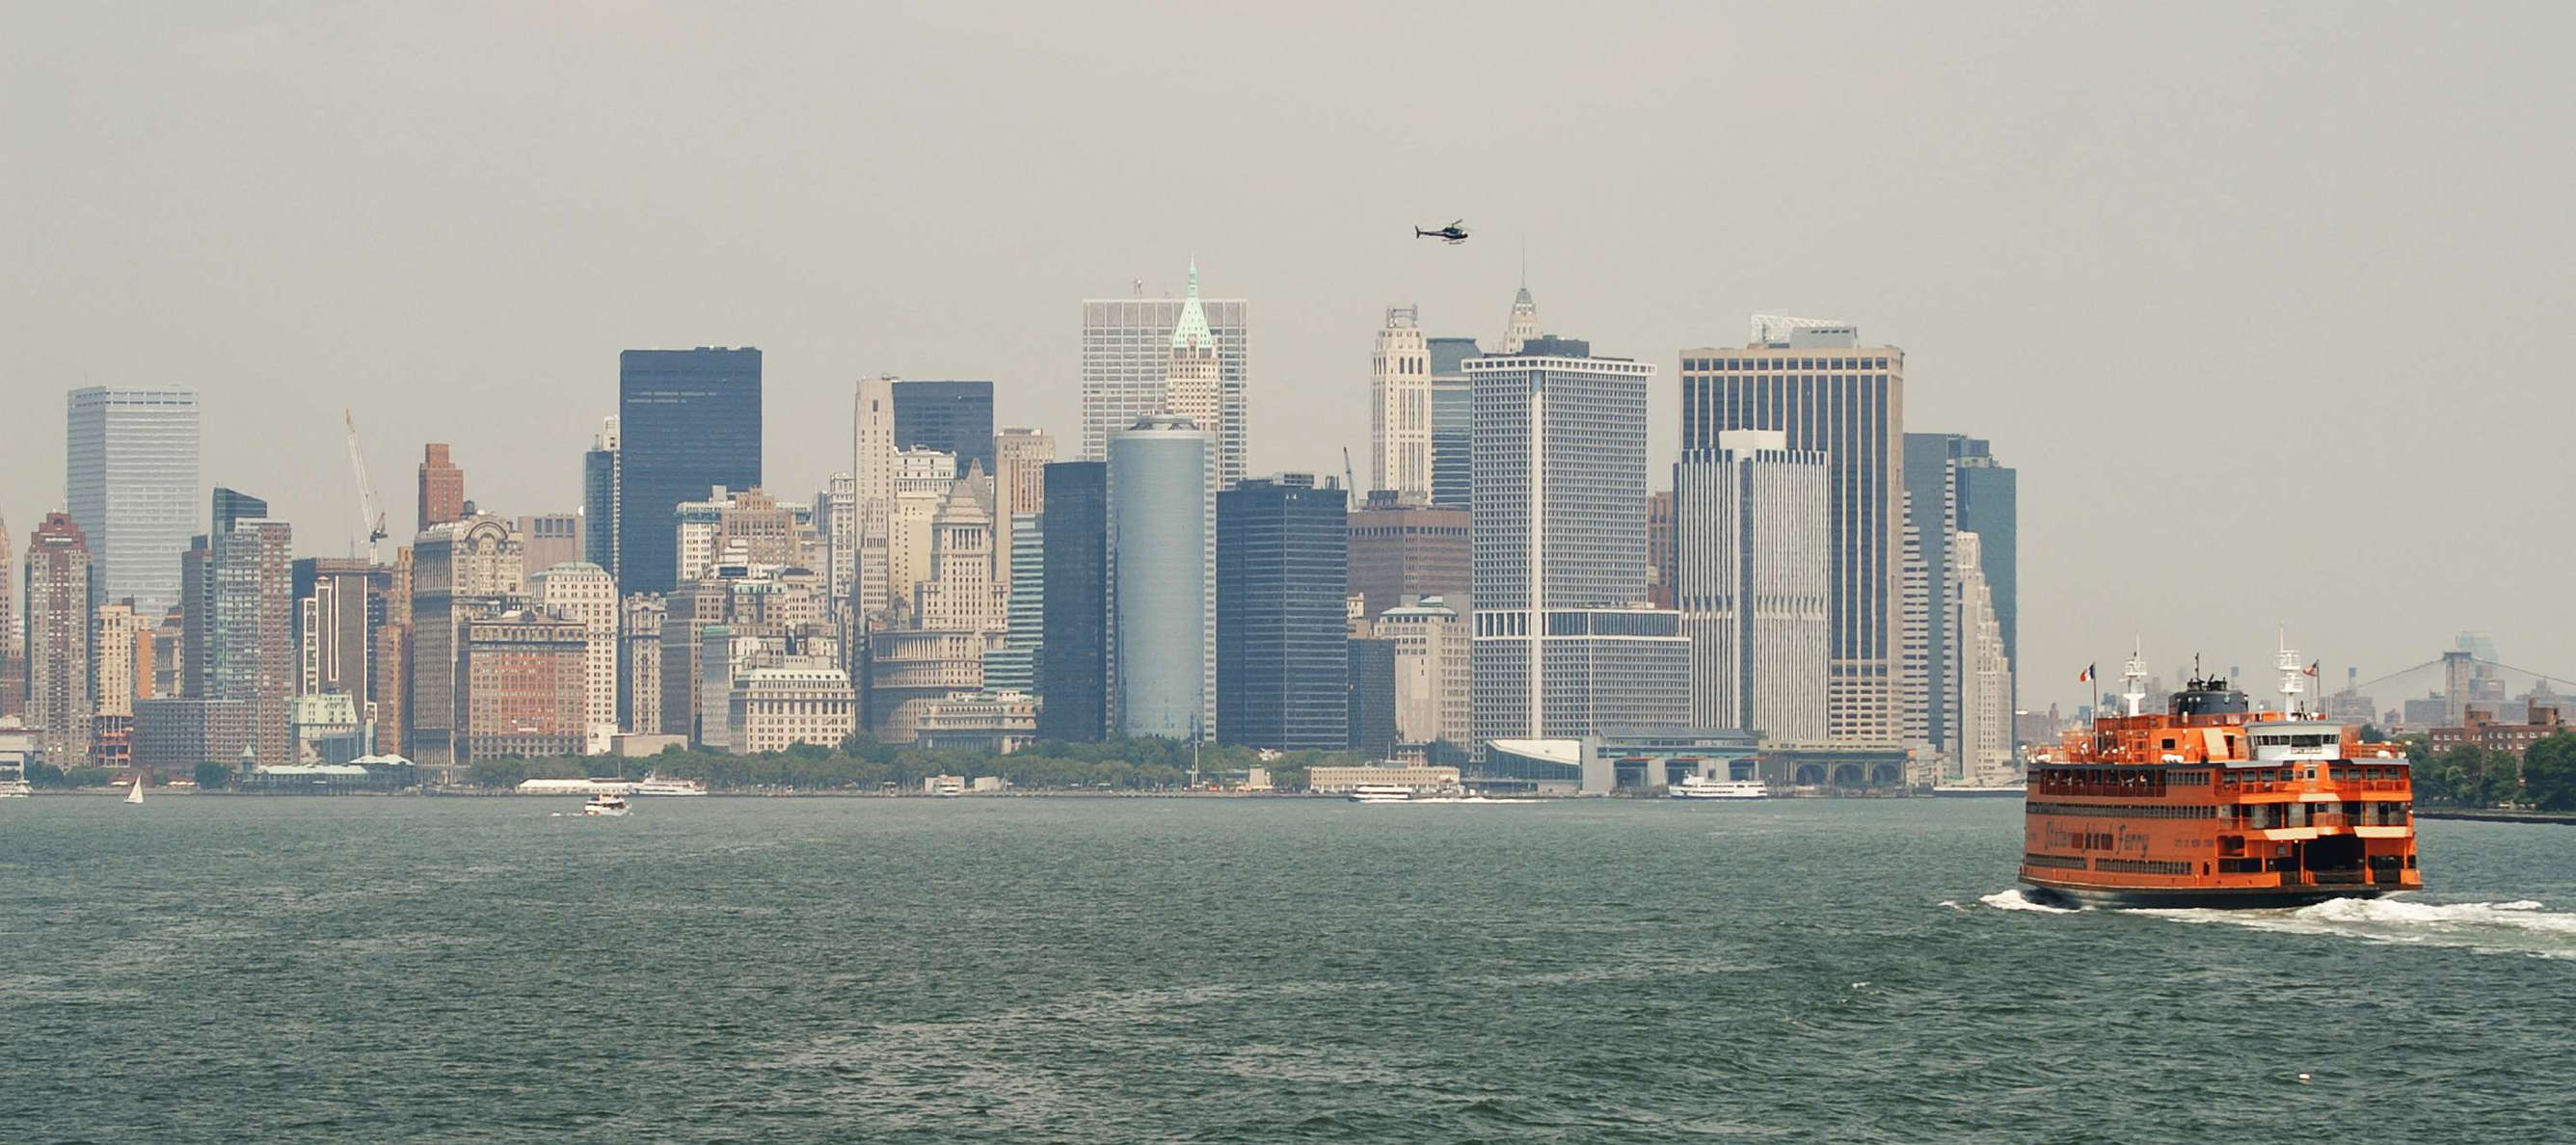 Lower Manhattan and Staten Island Ferry